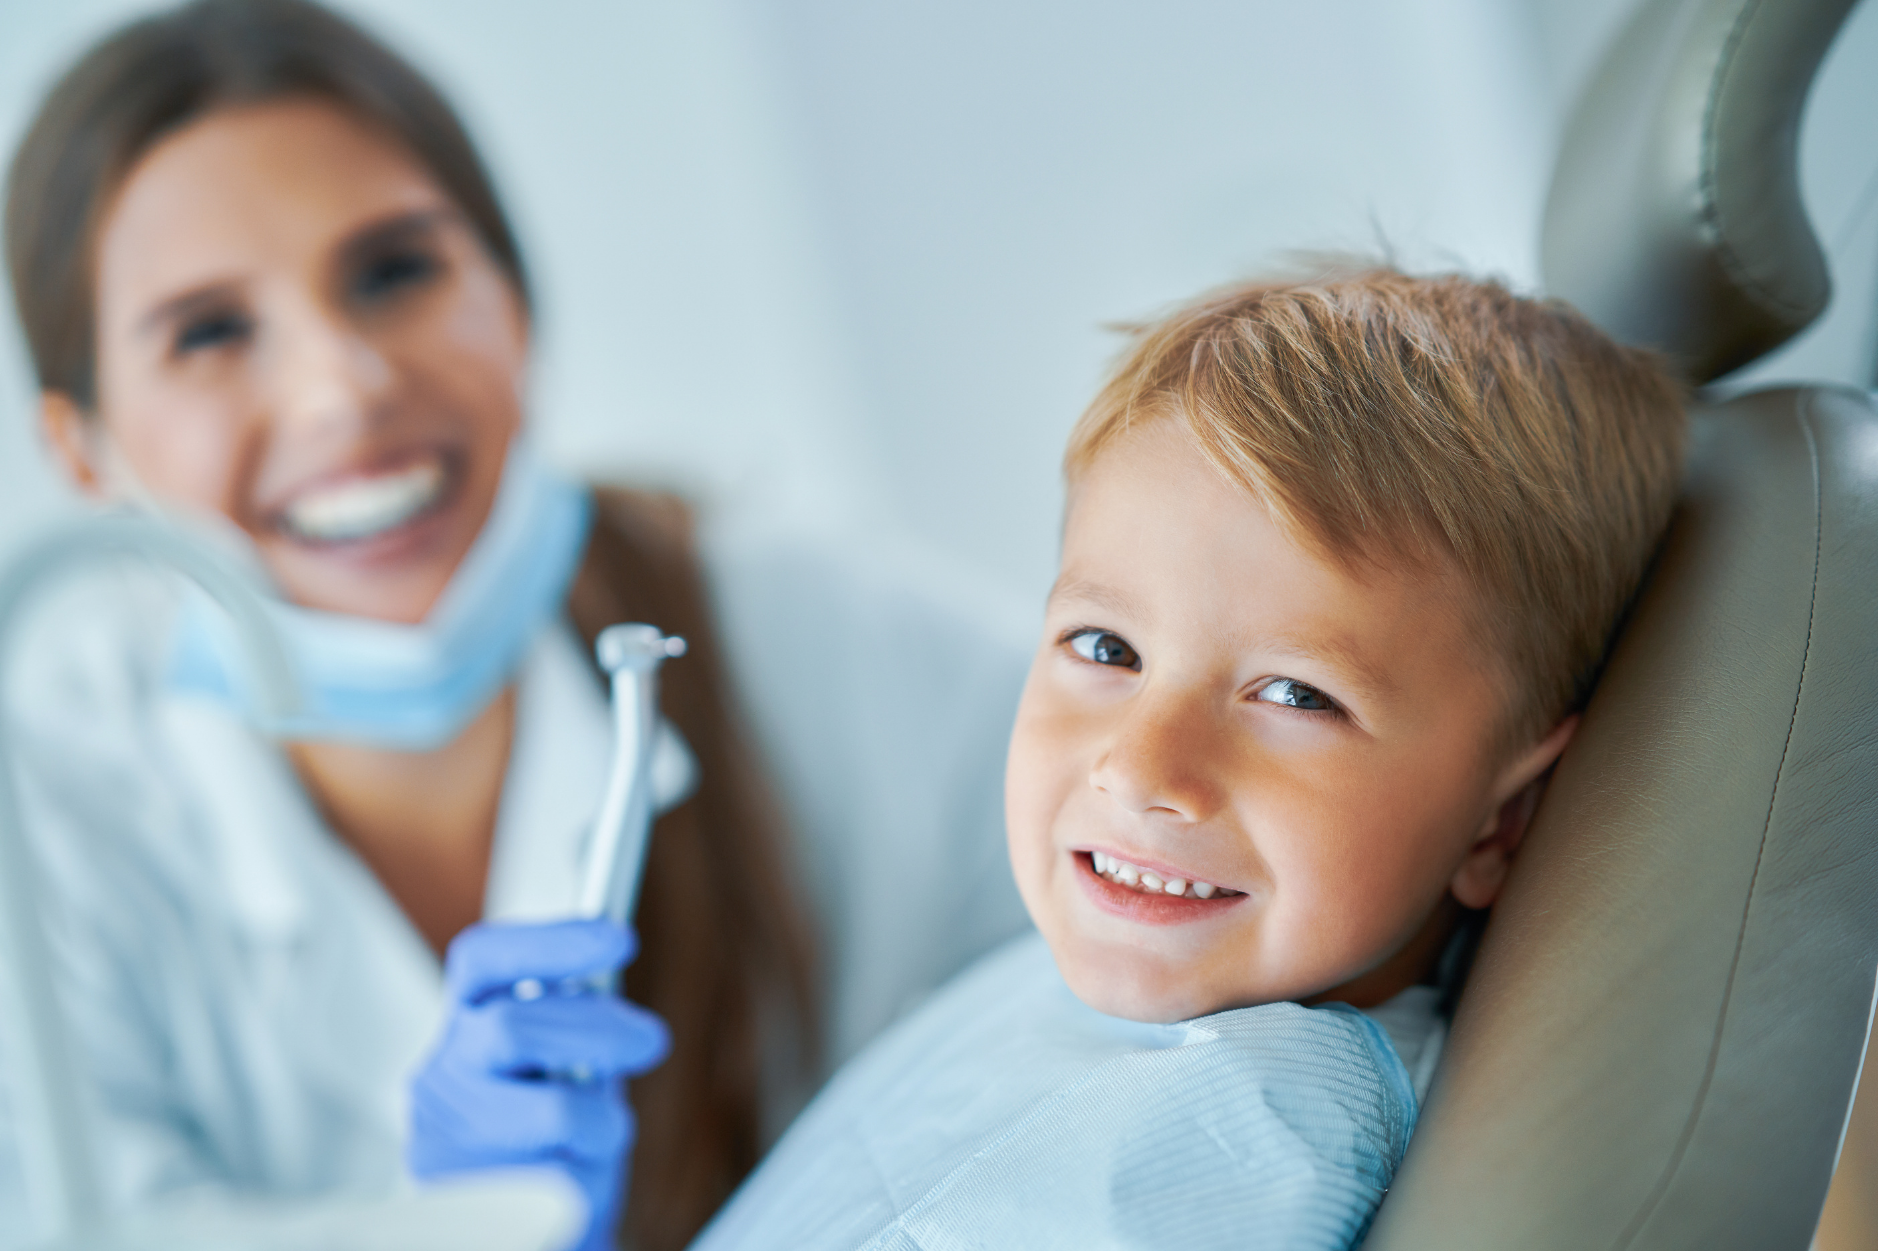 Il Dottor Andrea Poggi Dentista spiega l'importanza della prevenzione e del trattamento odontoiatrico in età puerile.